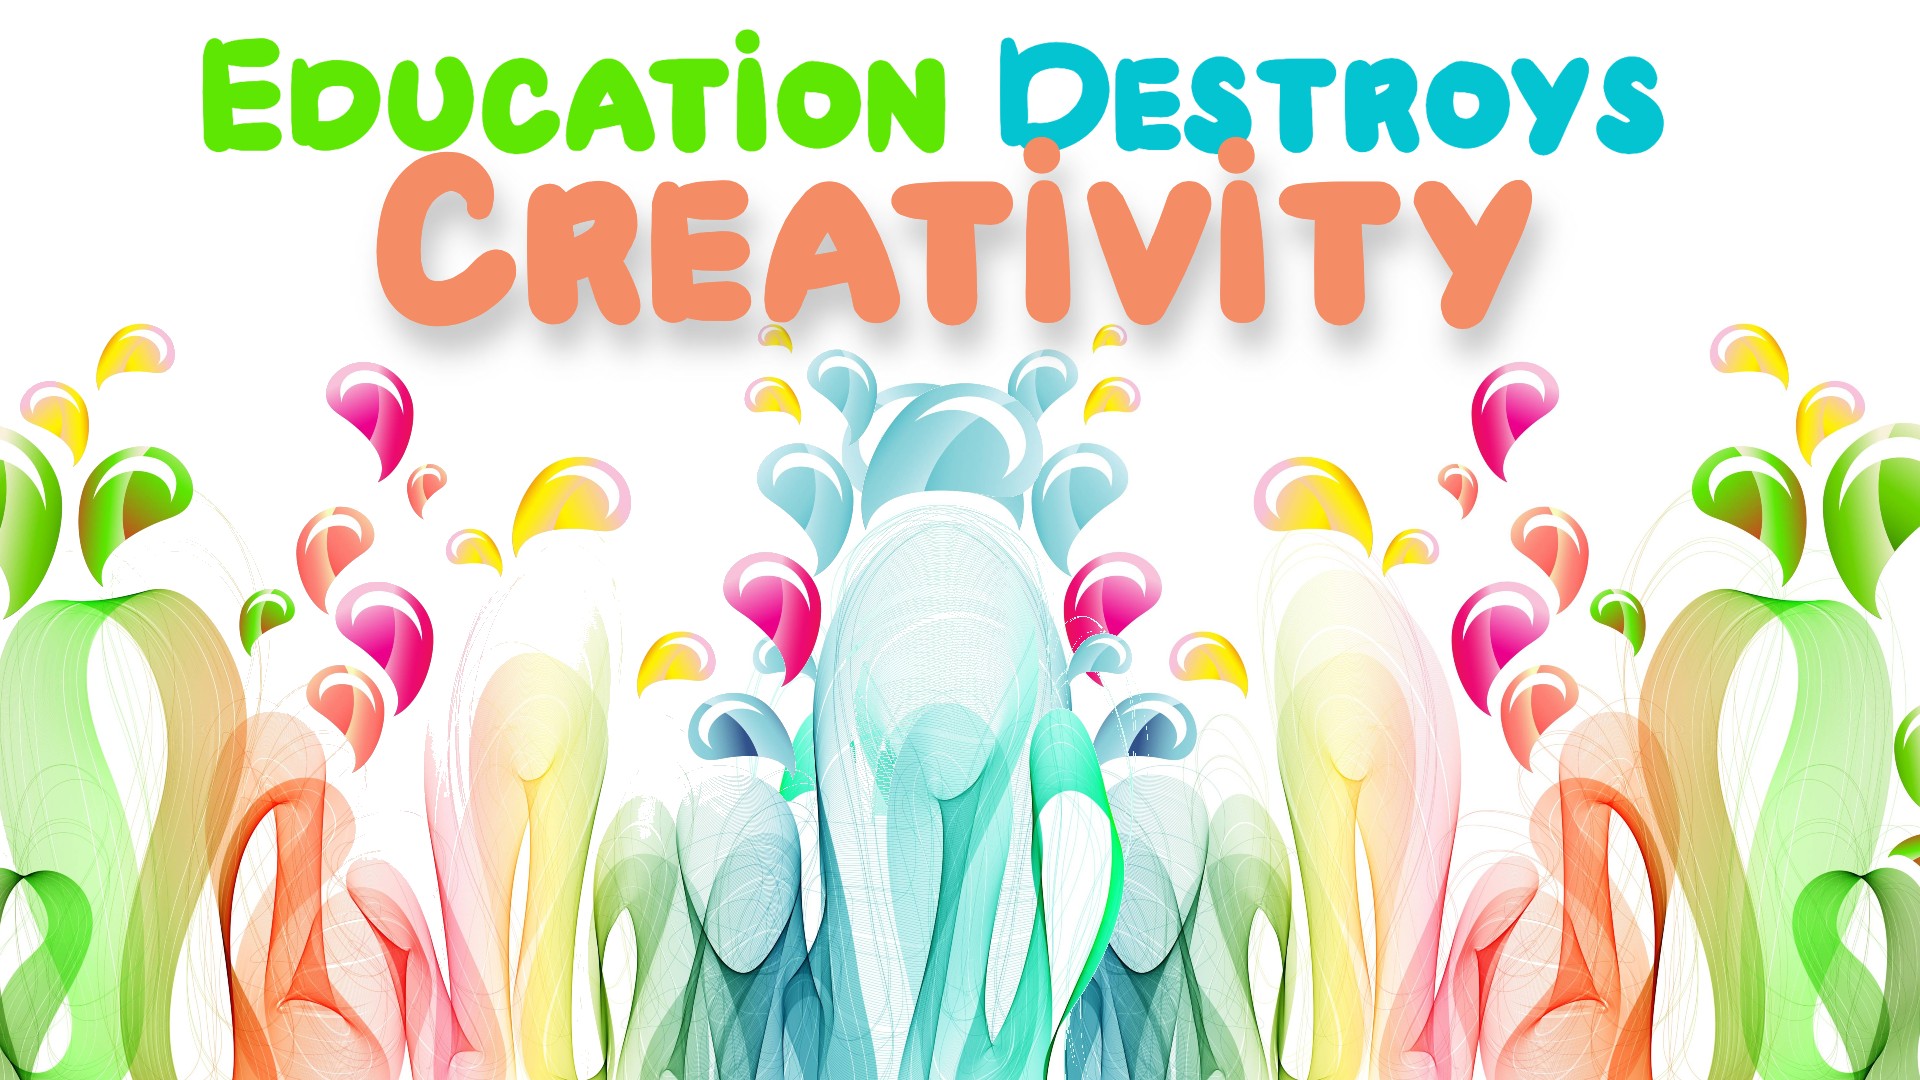 Education Destroys Creativity